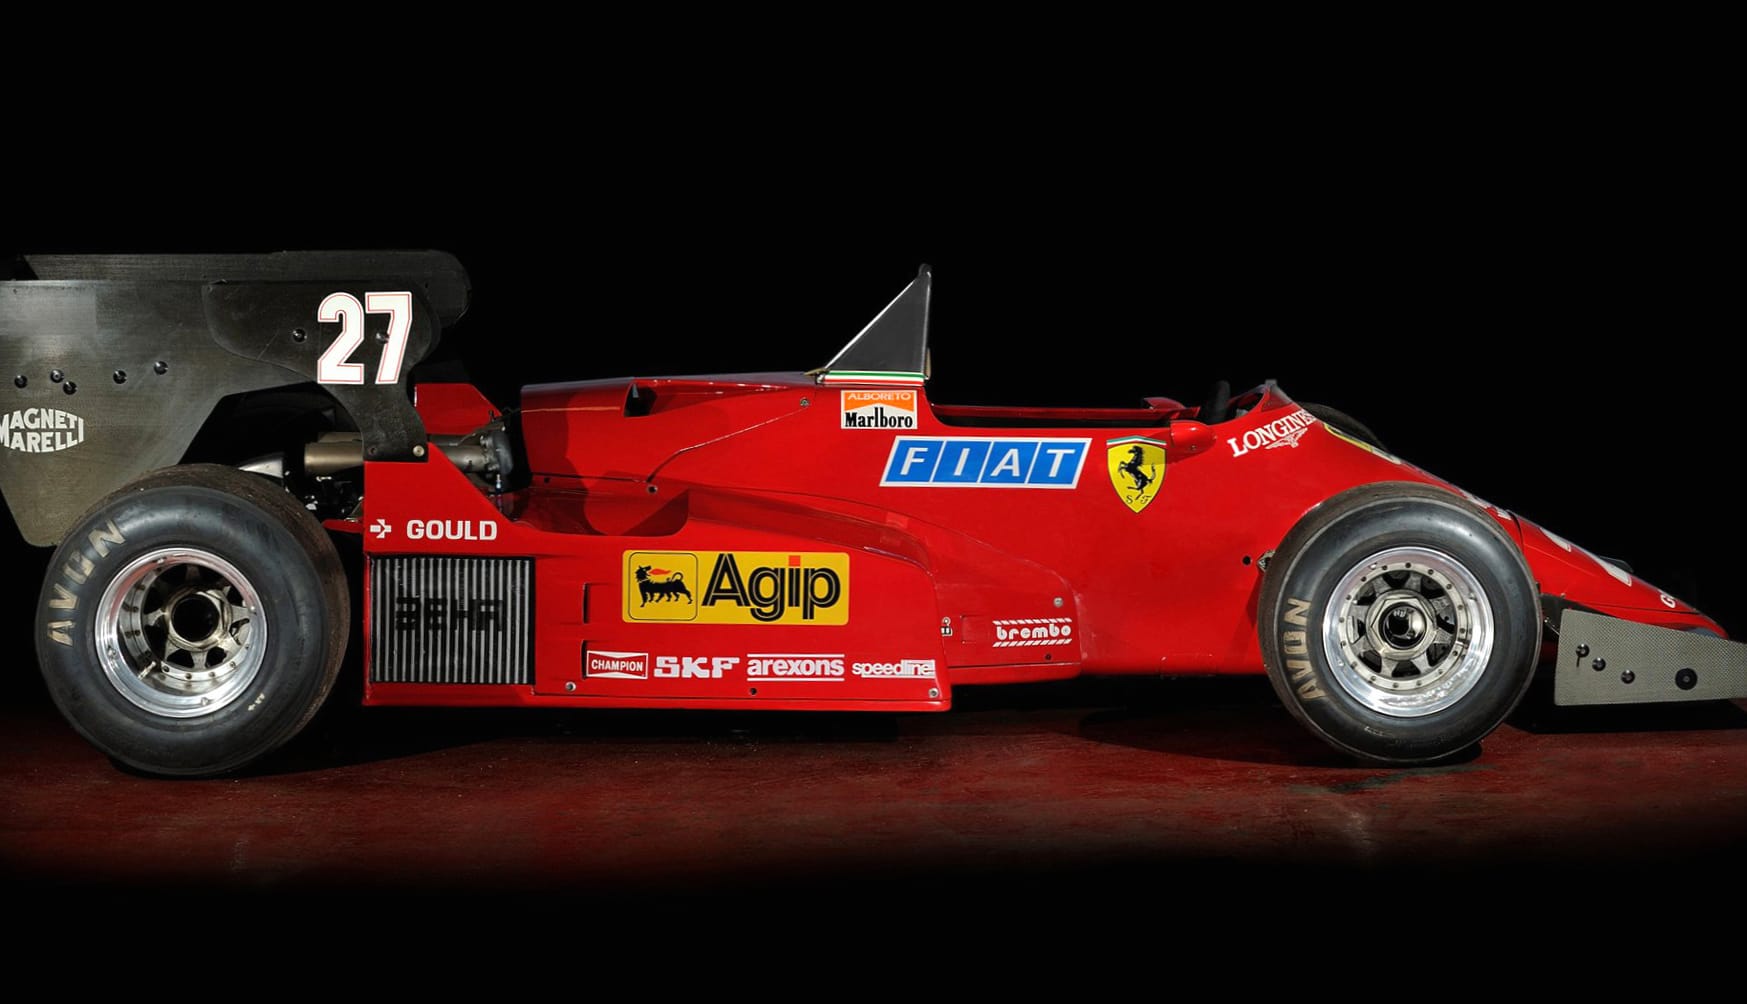 Ferrari 126 C4 at 2048 x 2048 iPad size wallpapers HD quality